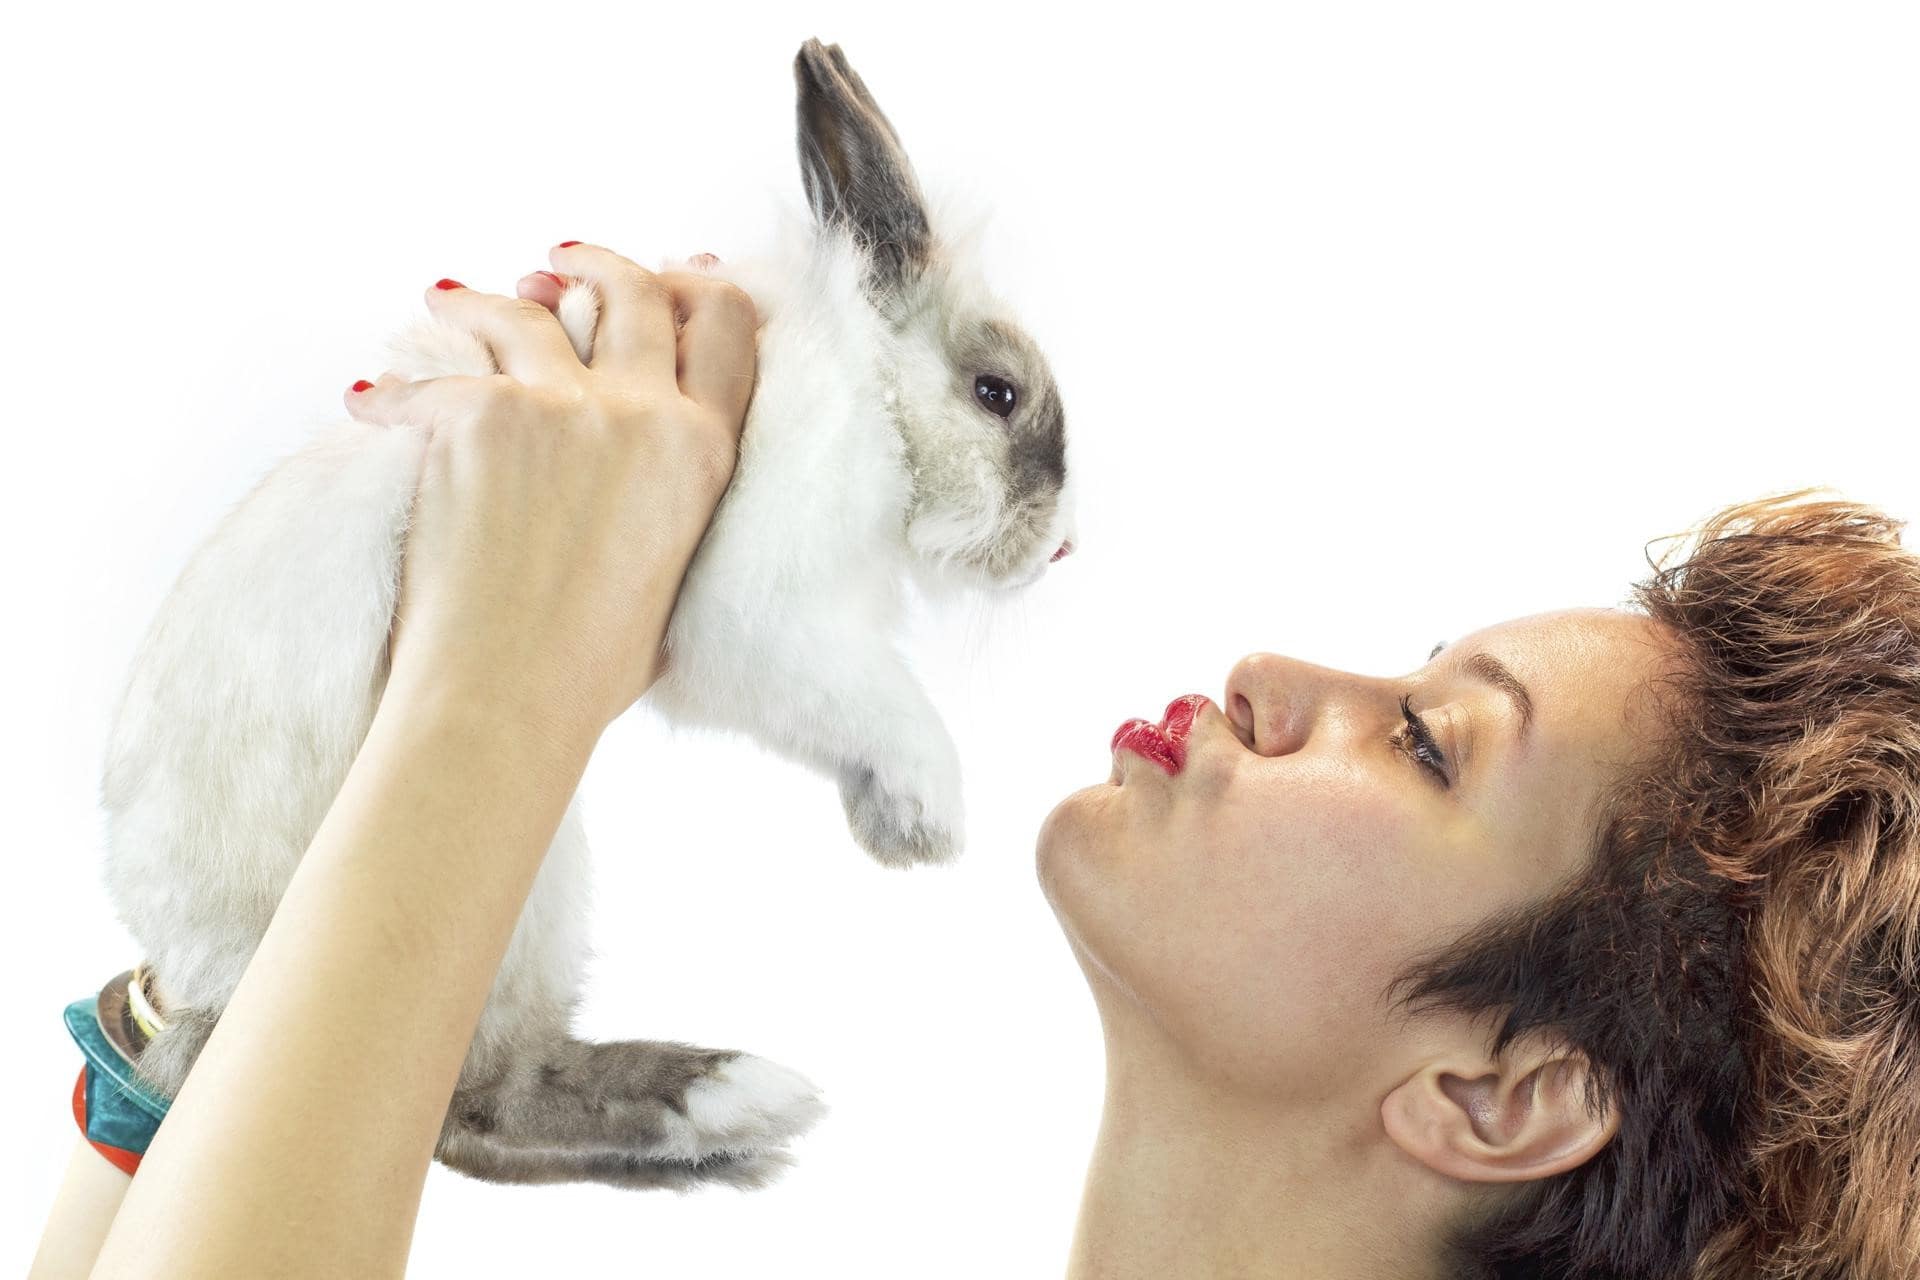 زنی با رژ و لاک قرمز رنگ، در حال بازی با یک خرگوش زیبا